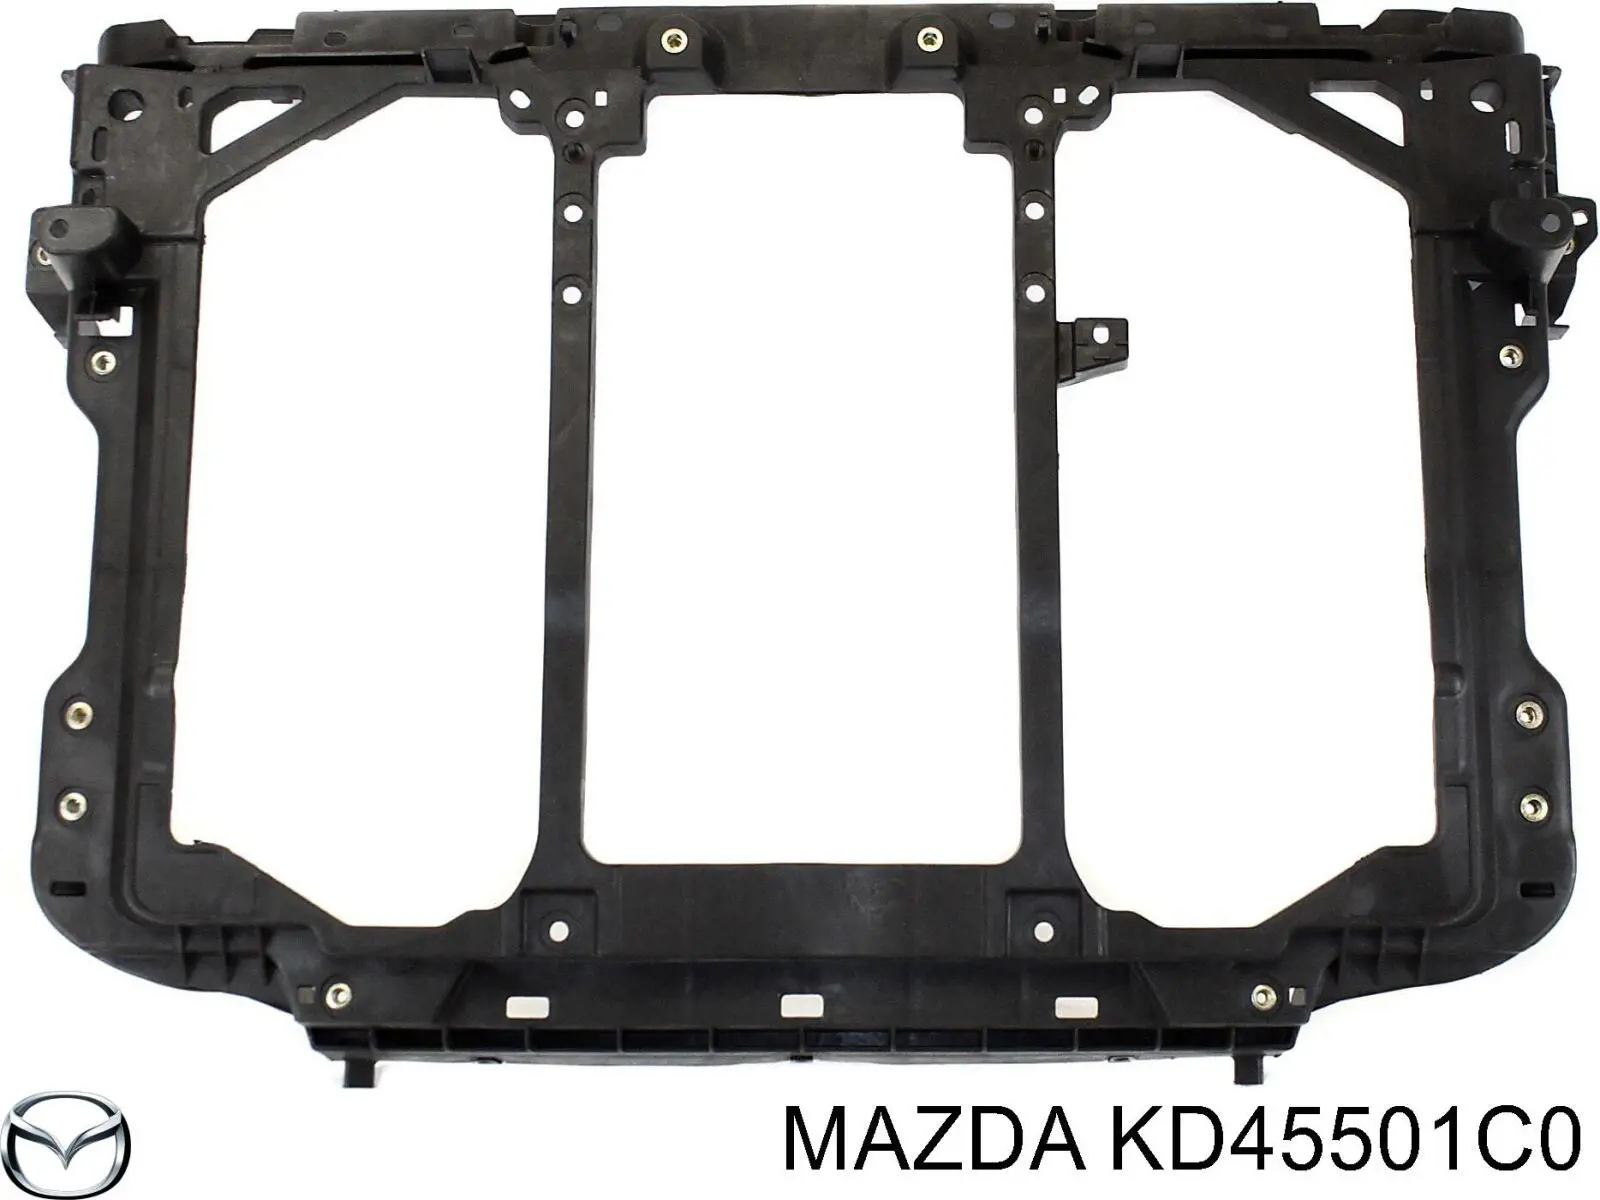 KD45501CO Mazda cubierta de soporte para difusor de radiador, superior